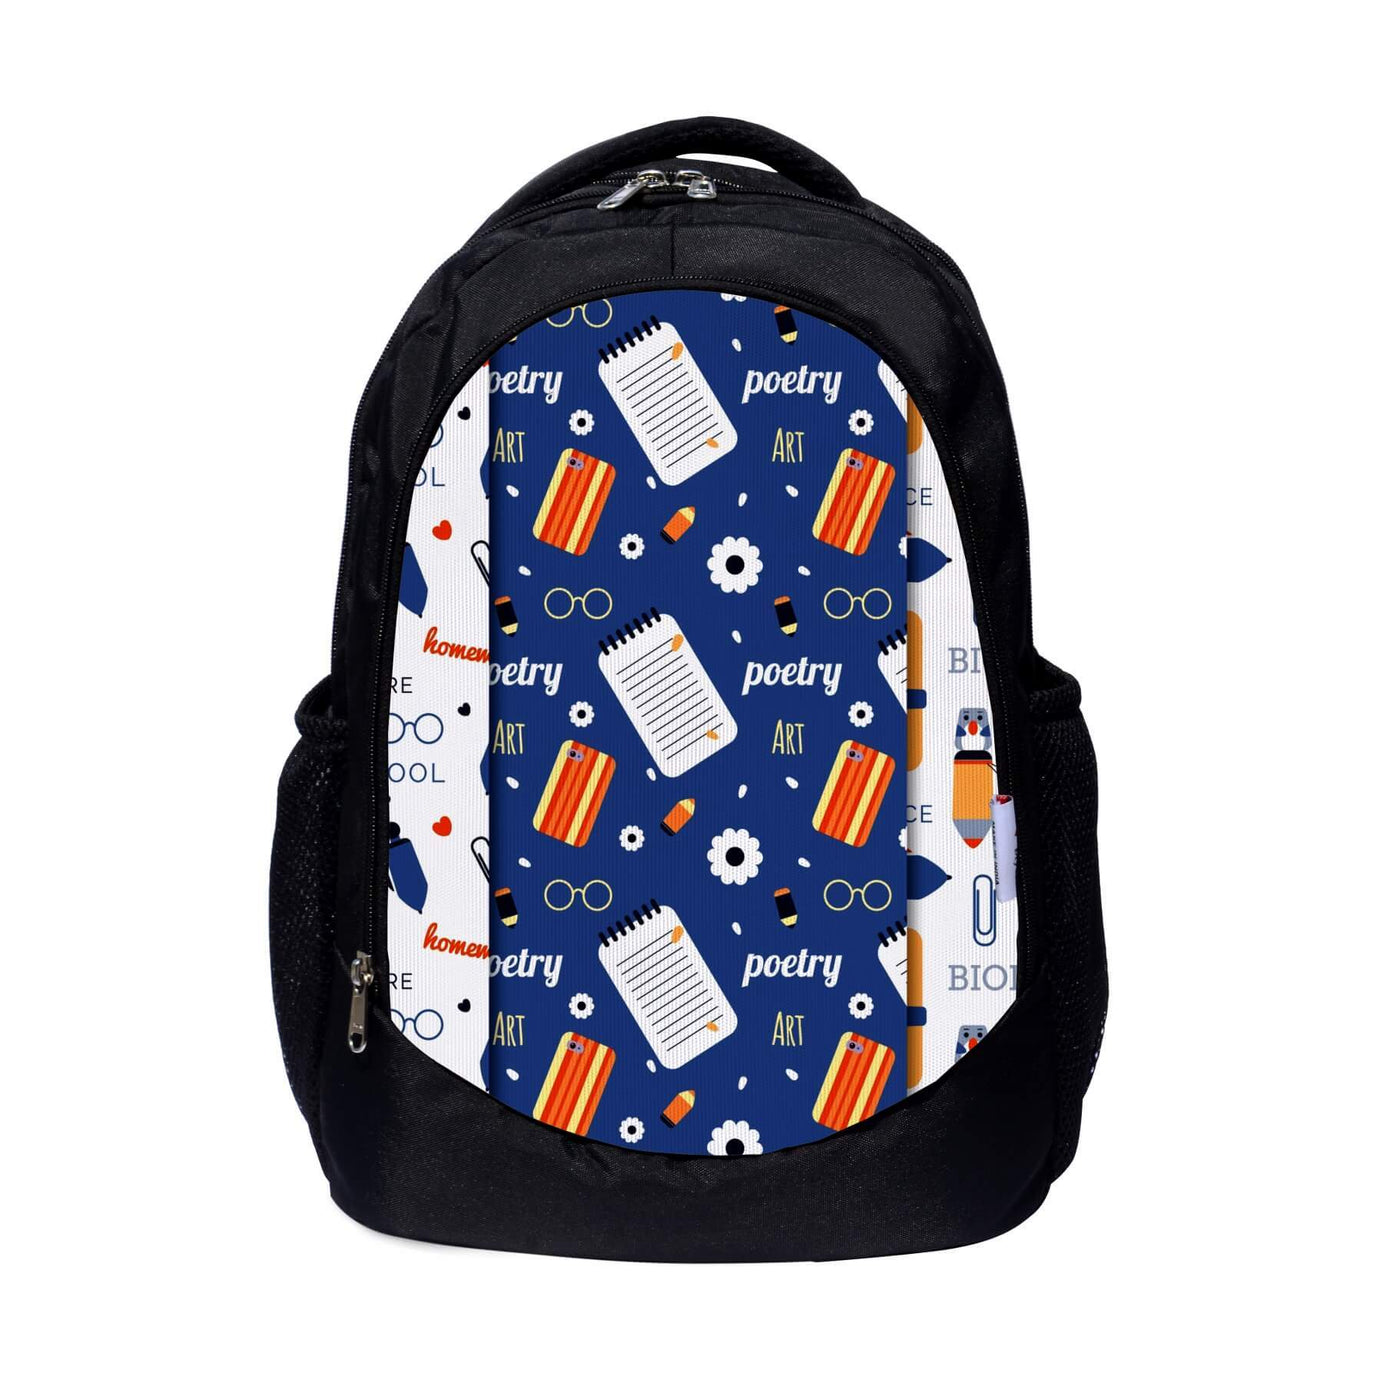 My Fav Printed Laptop Backpack for Men Women / School Bag for Boys & Girls